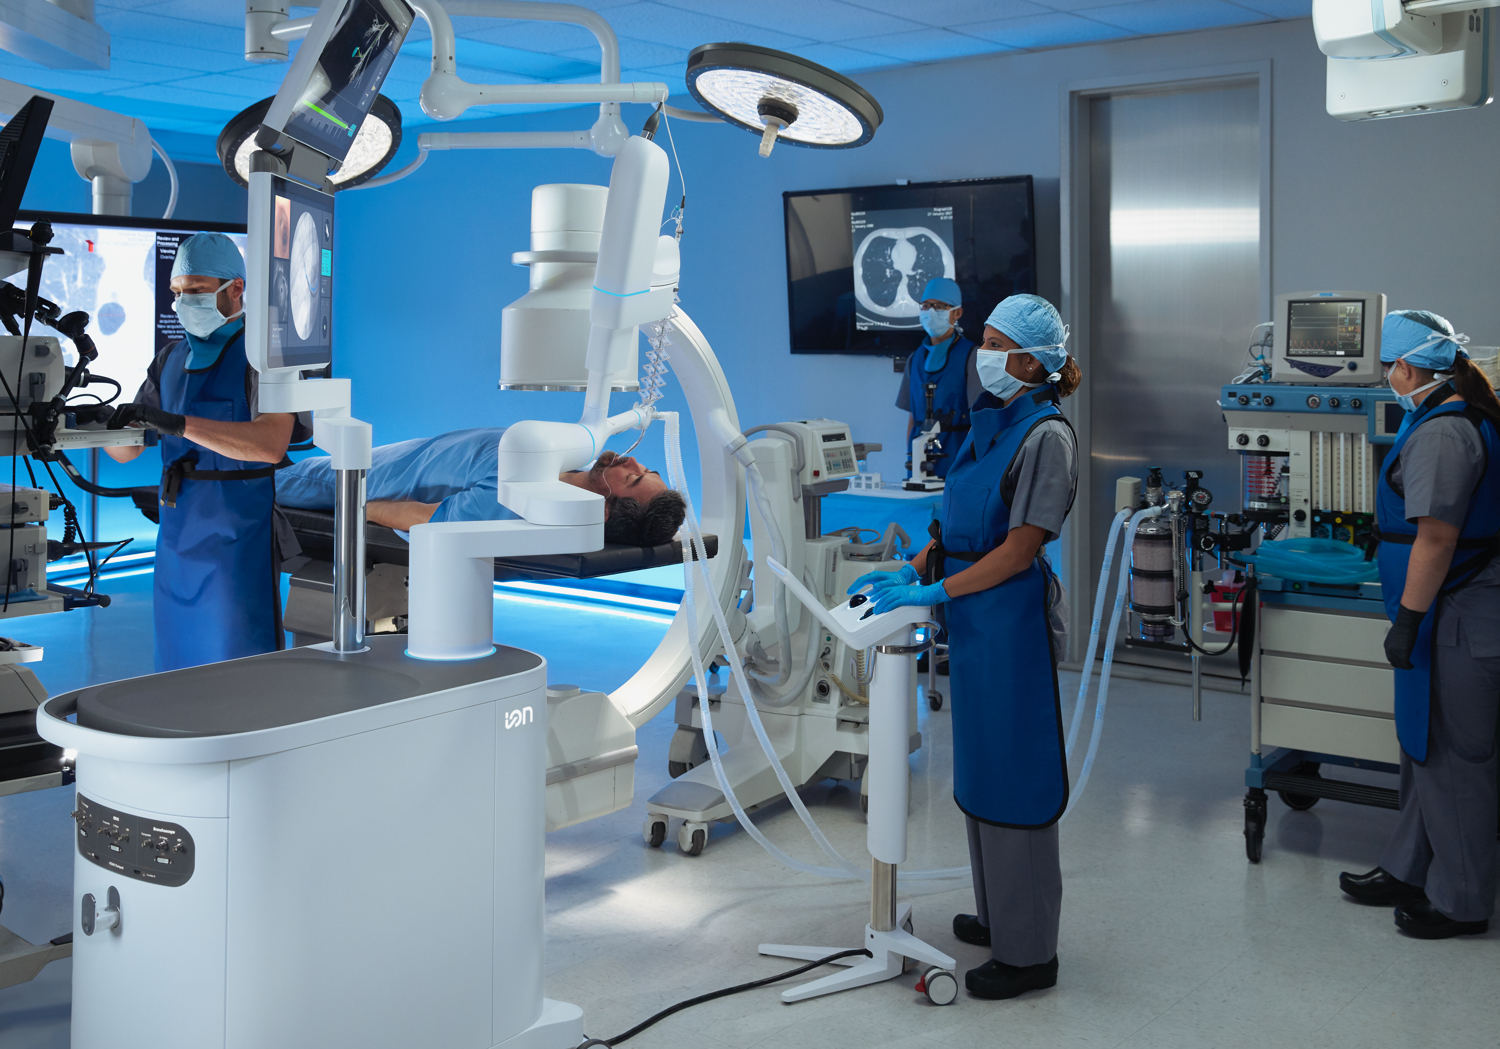 Da Vinci ist eines der am meisten verbreiteten Roboter-Systeme für digitale Chirurgie